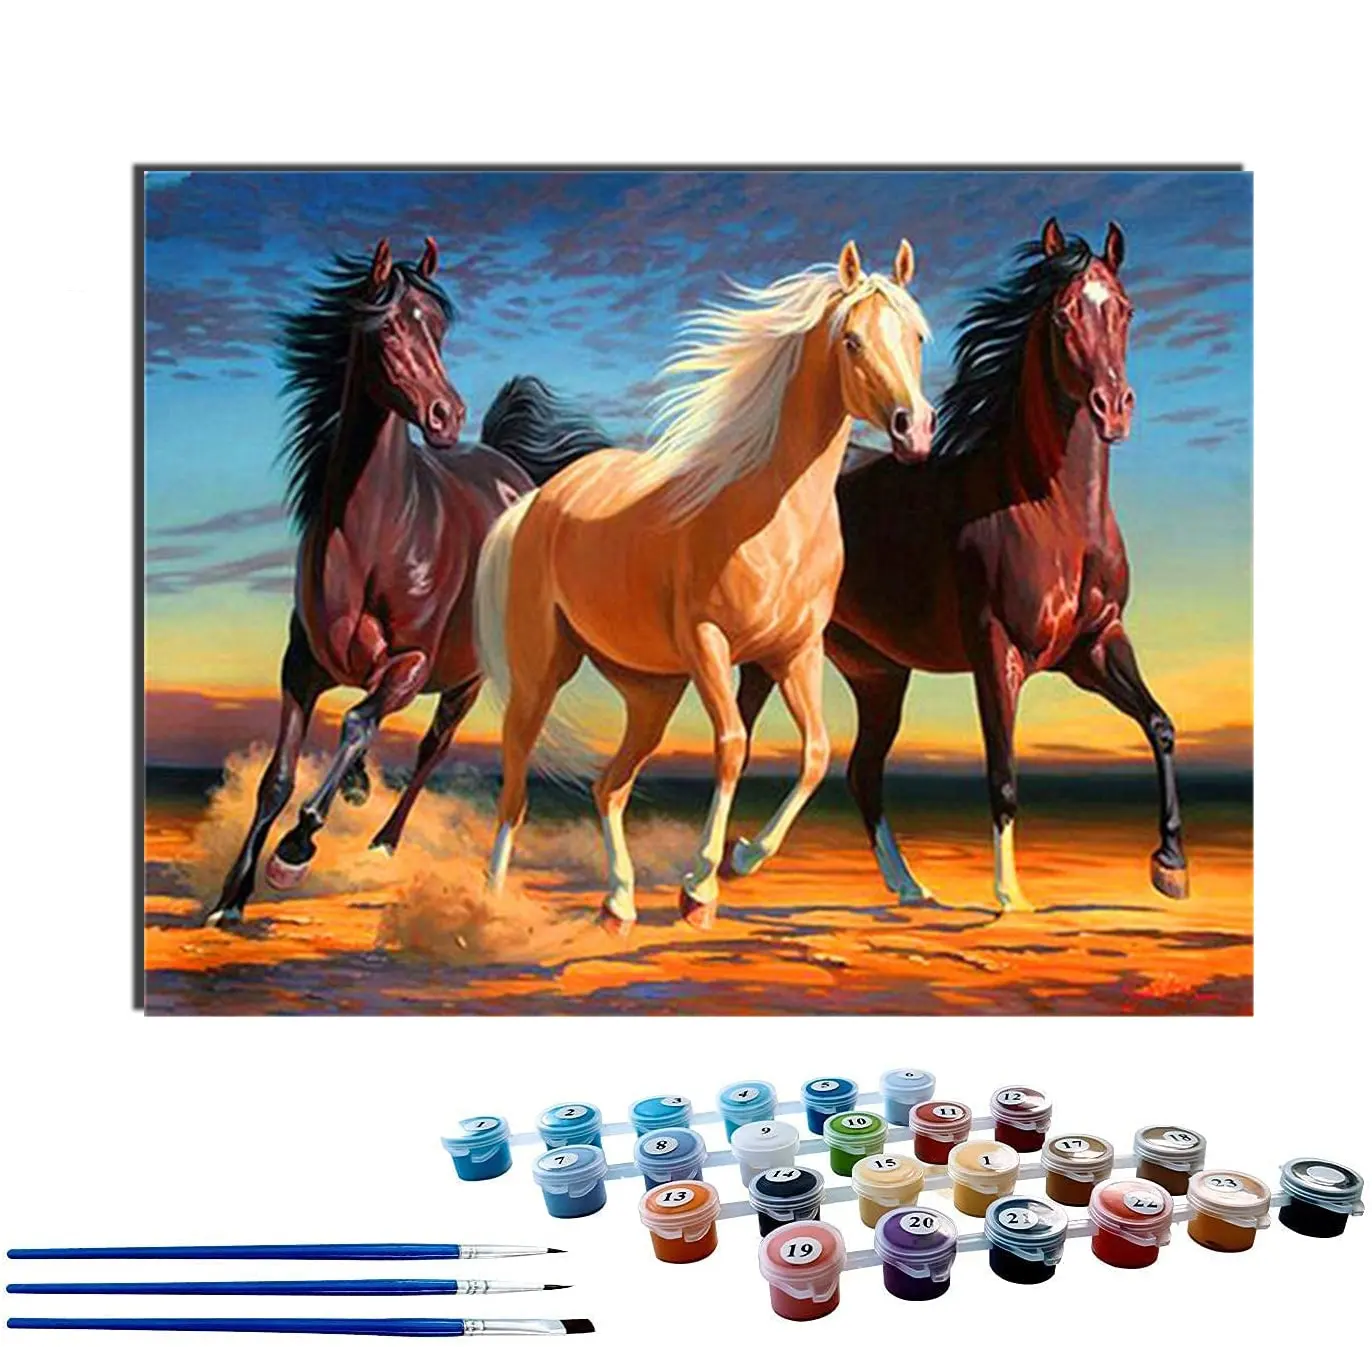 16x20 pouces maison décoration murale peinture par numéros Kits chevaux galopant acrylique bricolage peinture toile peinture ensemble pour enfants